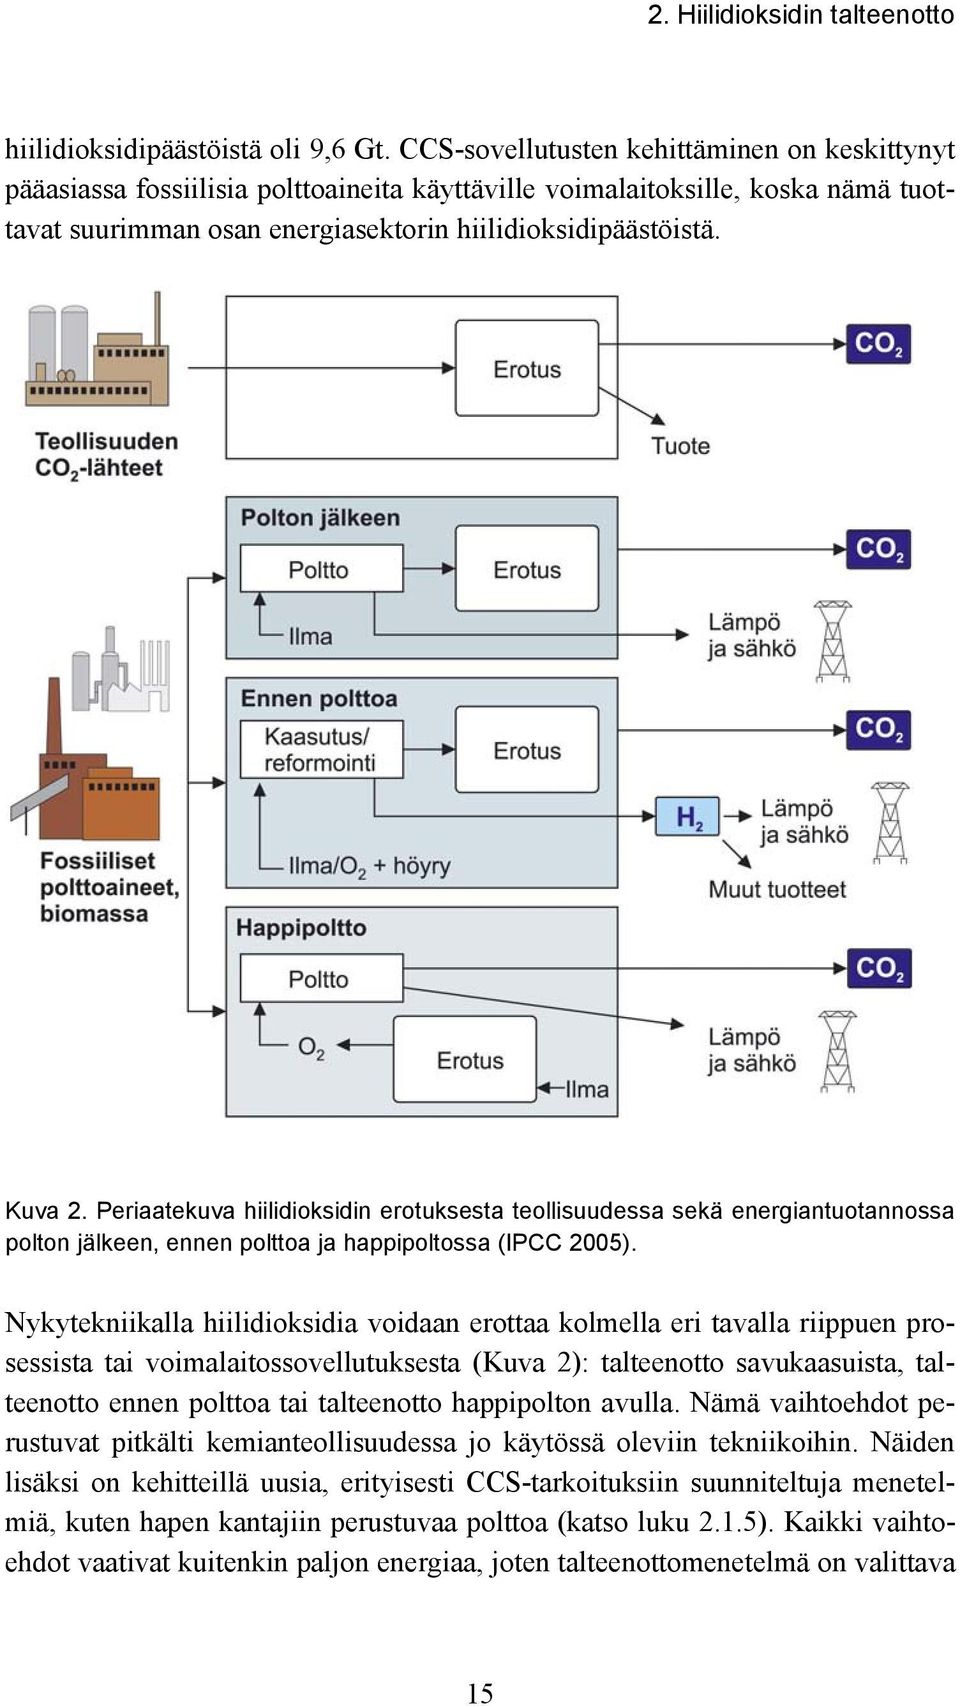 Periaatekuva hiilidioksidin erotuksesta teollisuudessa sekä energiantuotannossa polton jälkeen, ennen polttoa ja happipoltossa (IPCC 2005).